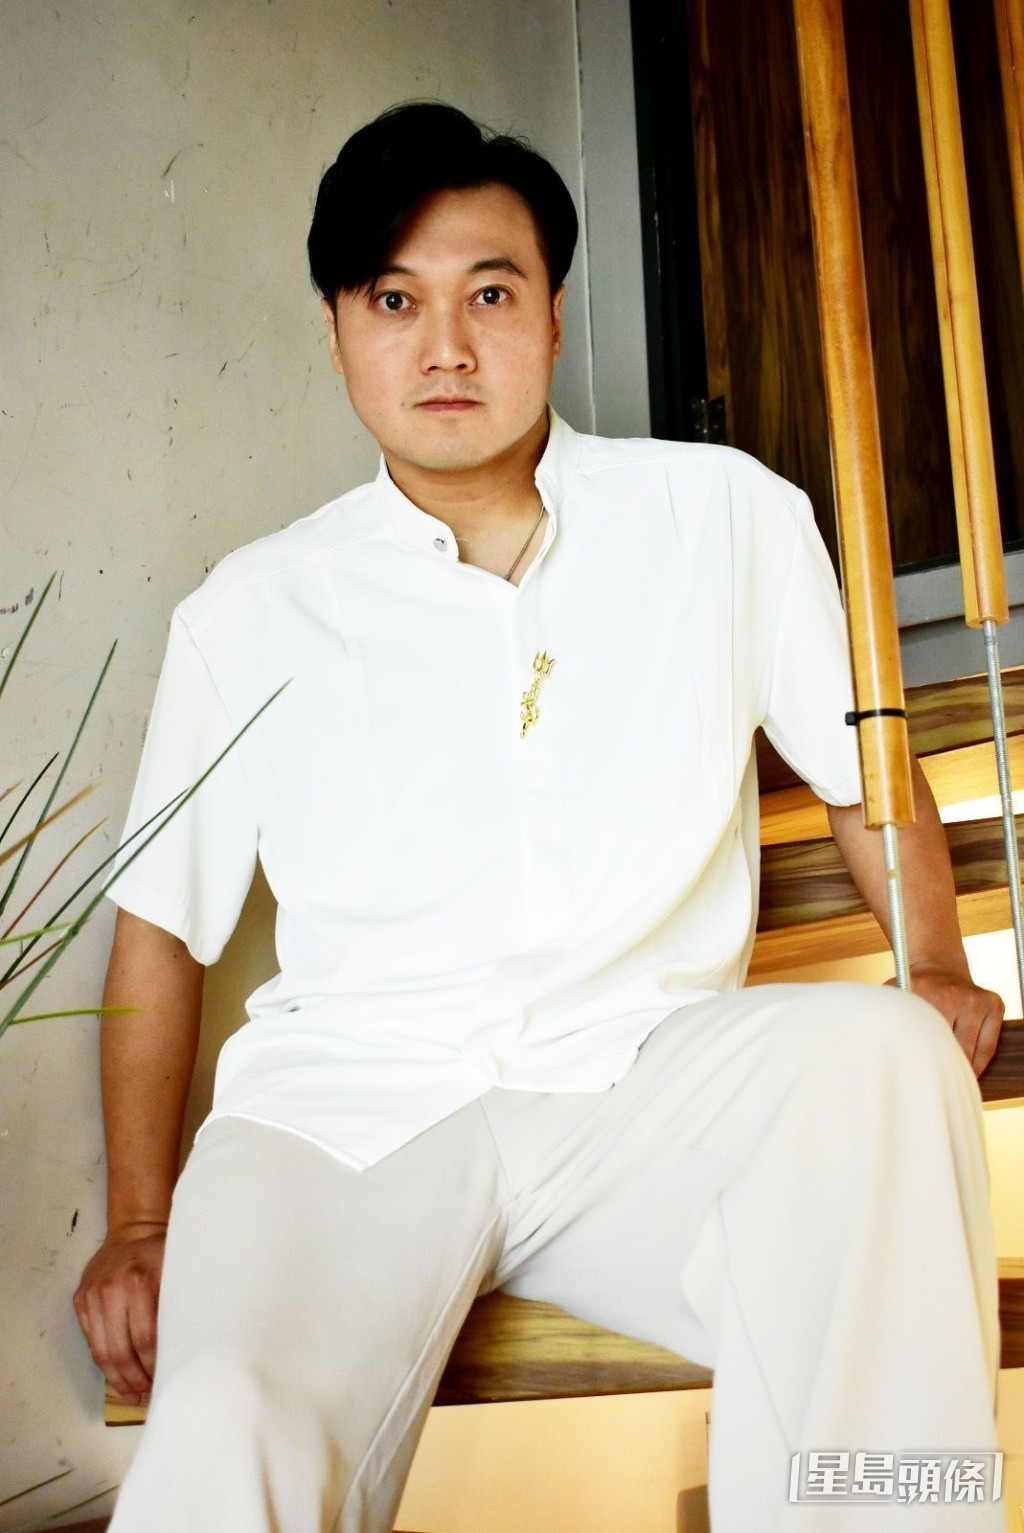 40歲的王嘉明仍然有歌星夢。